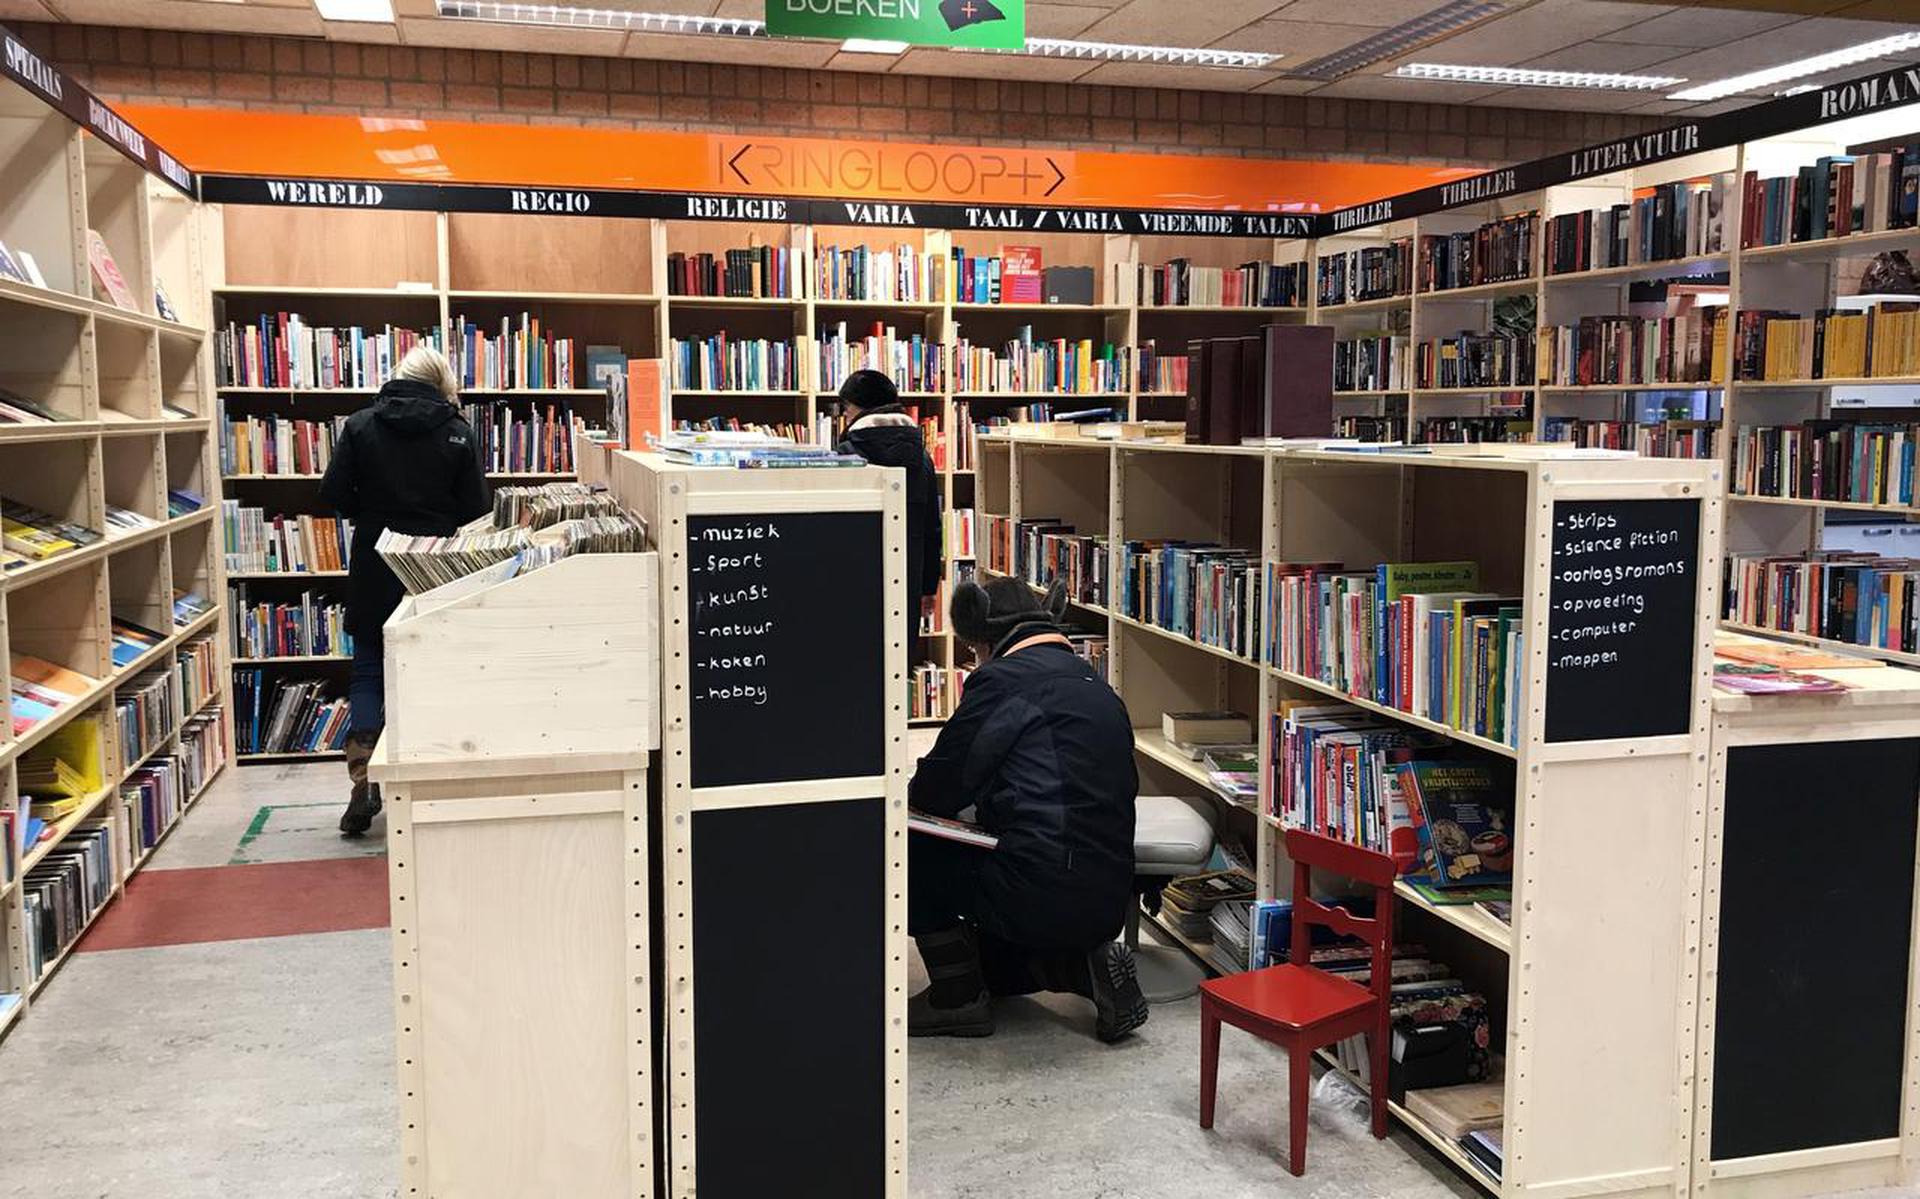 Kringloop+ is vandaag jarig. Ter ere van het vierjarig bestaan is de winkel opgeknapt. Zo is bijvoorbeeld de boekenhoek opnieuw ingericht.
